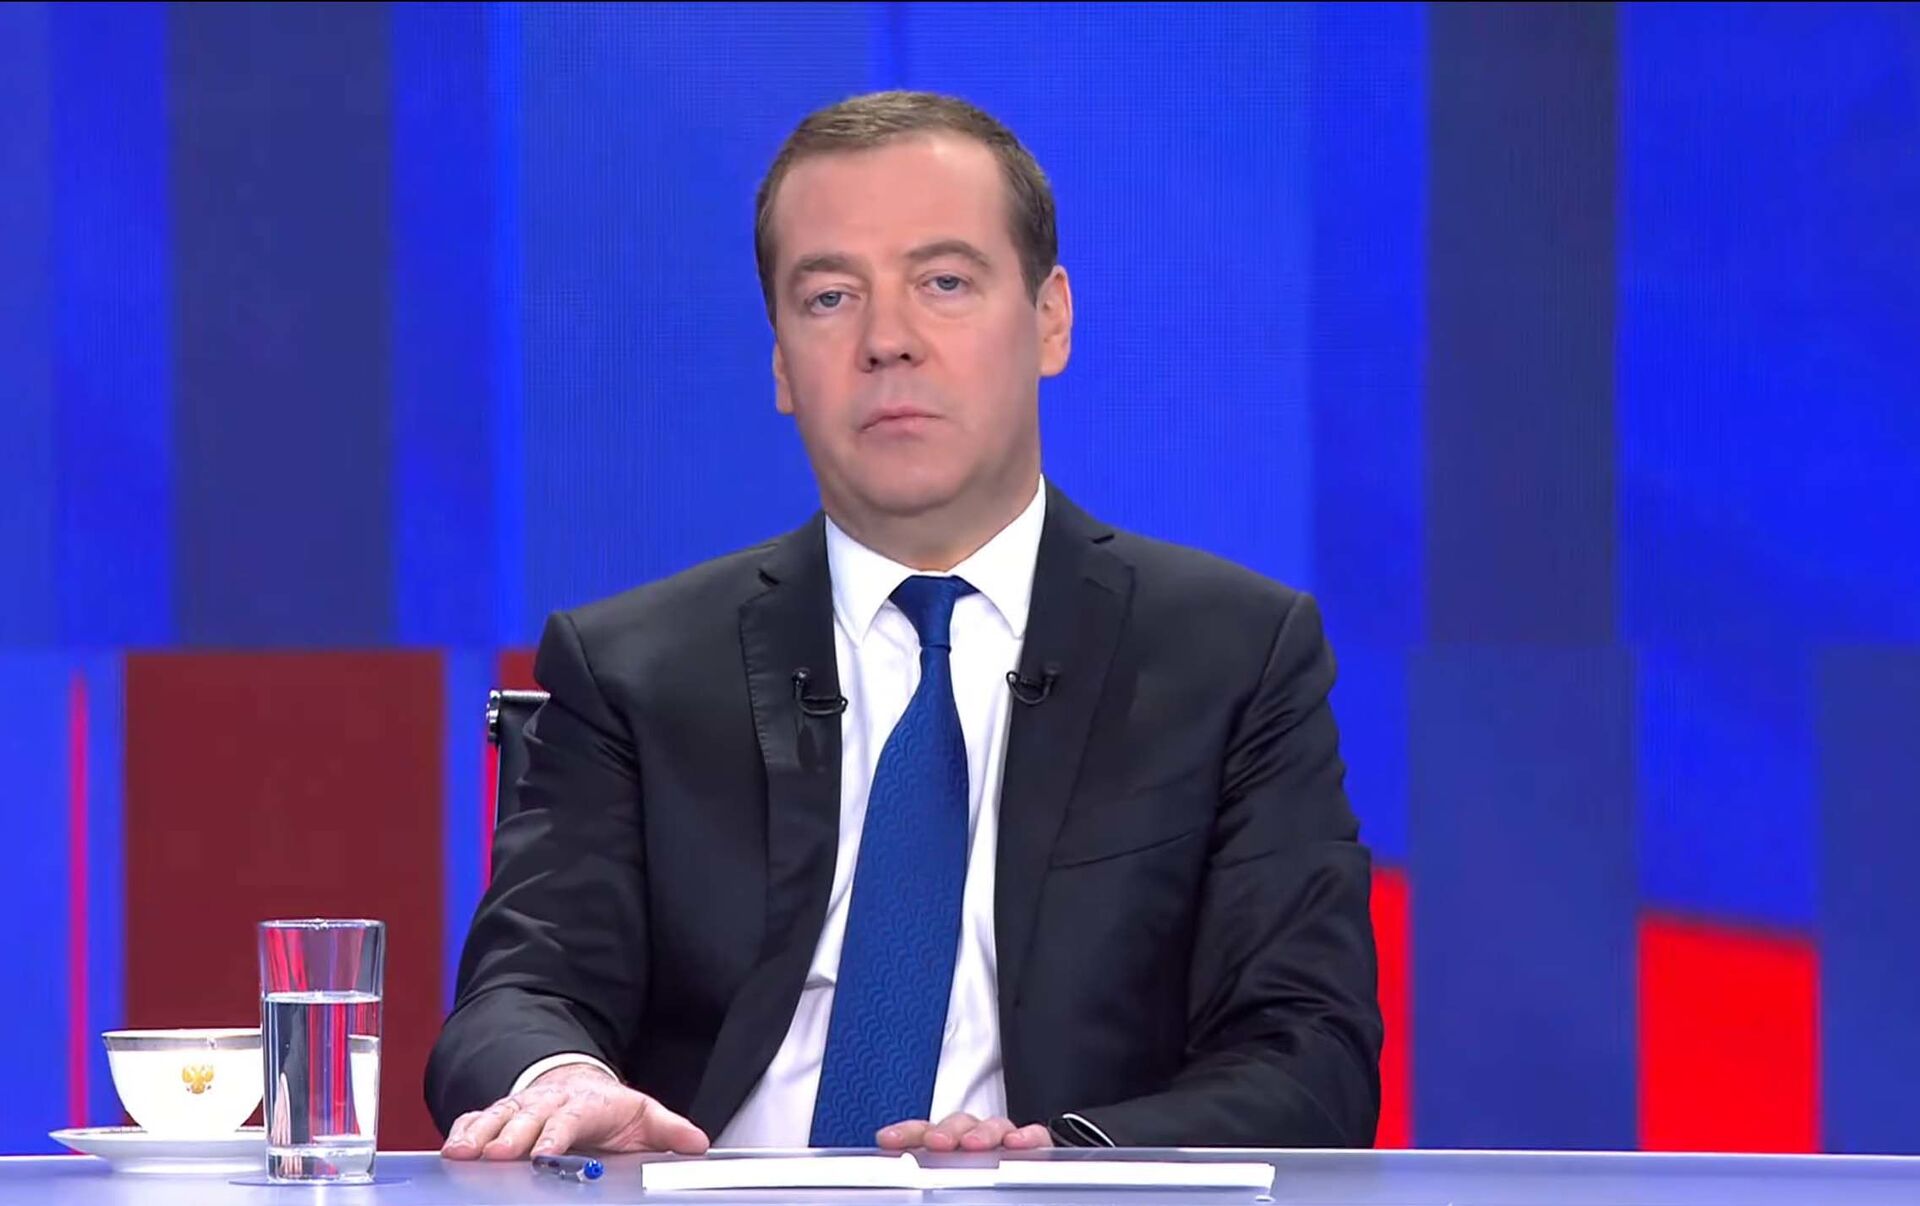 1 канал полностью. Медведев интервью. Анонс интервью с Дмитрием Медведевым Россия 1 2010.